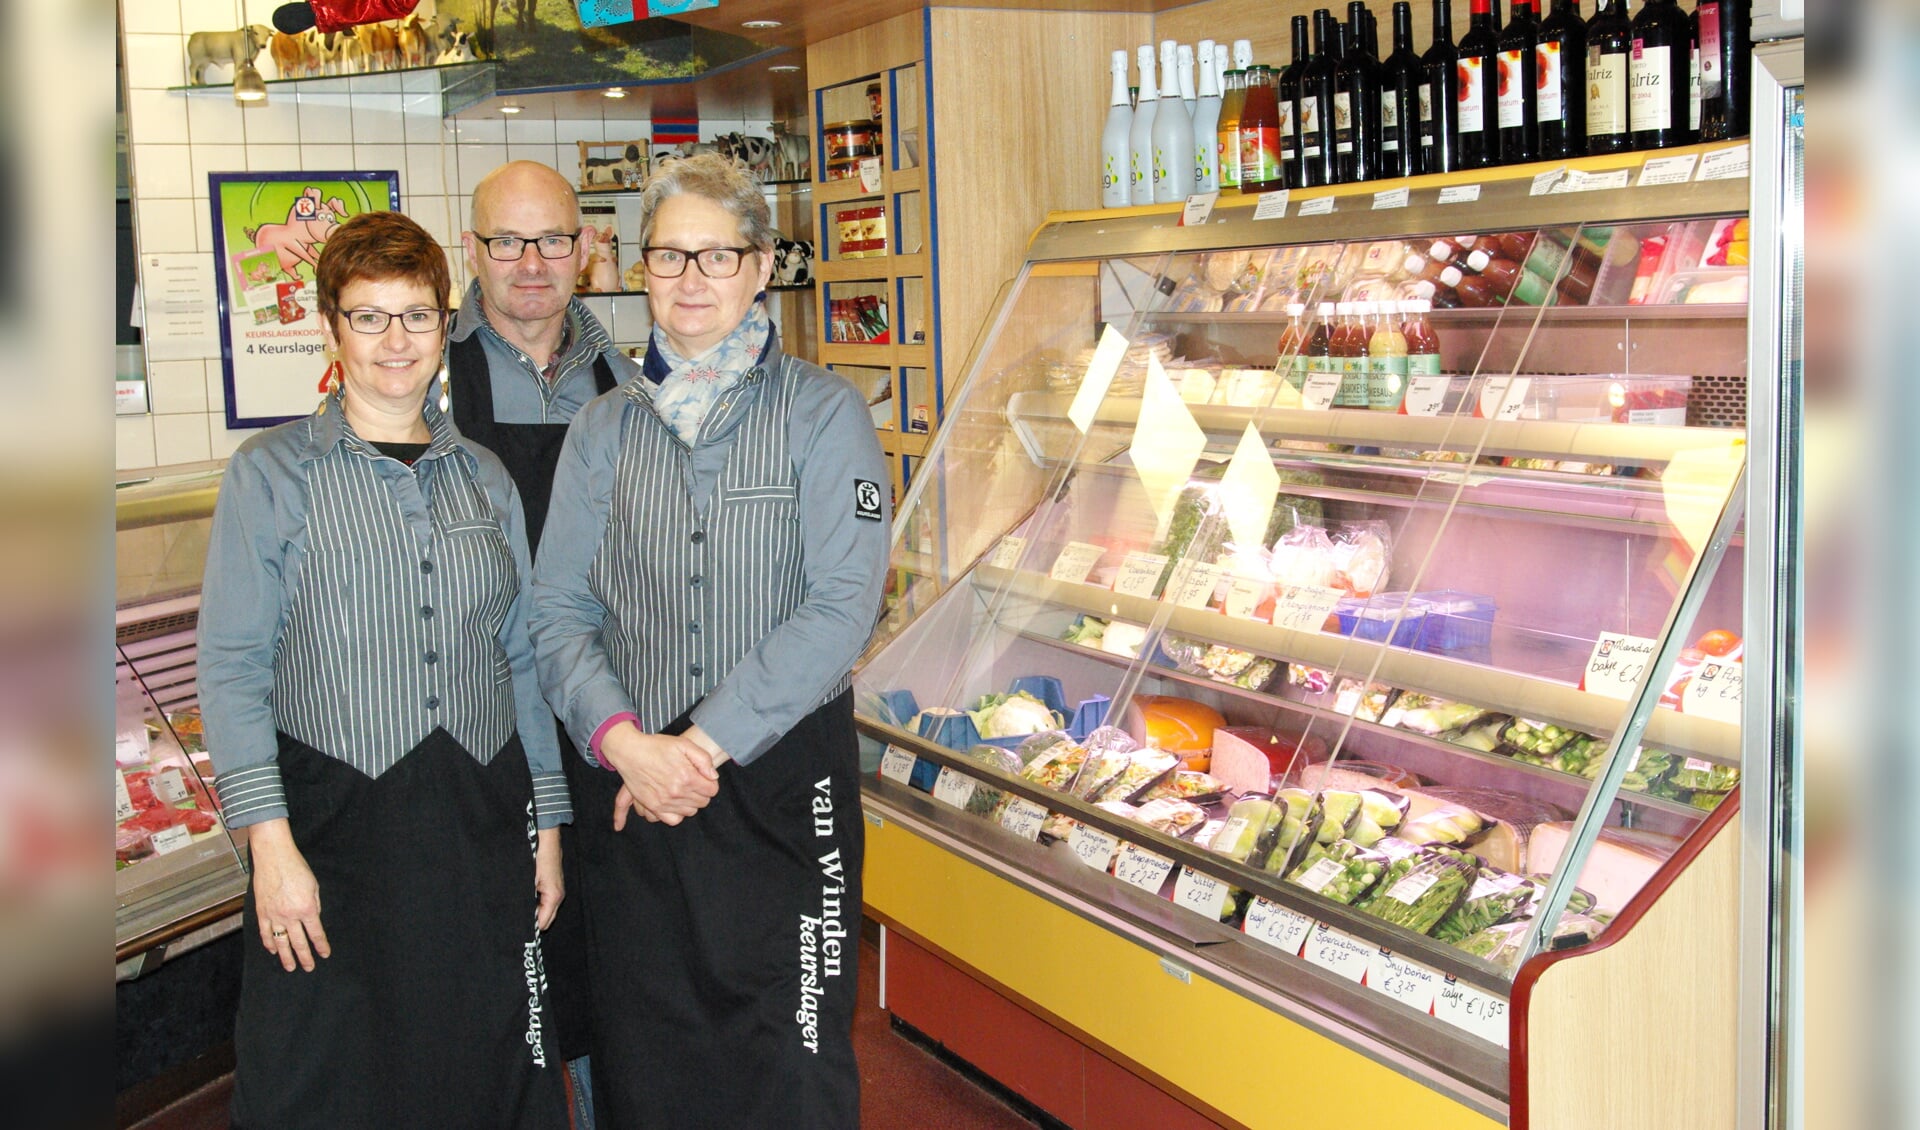 Veronique, Evert en Susan van Winden, met rechts van hen een schap vol producten om je vleesgerechten nog lekkerder mee te maken.  